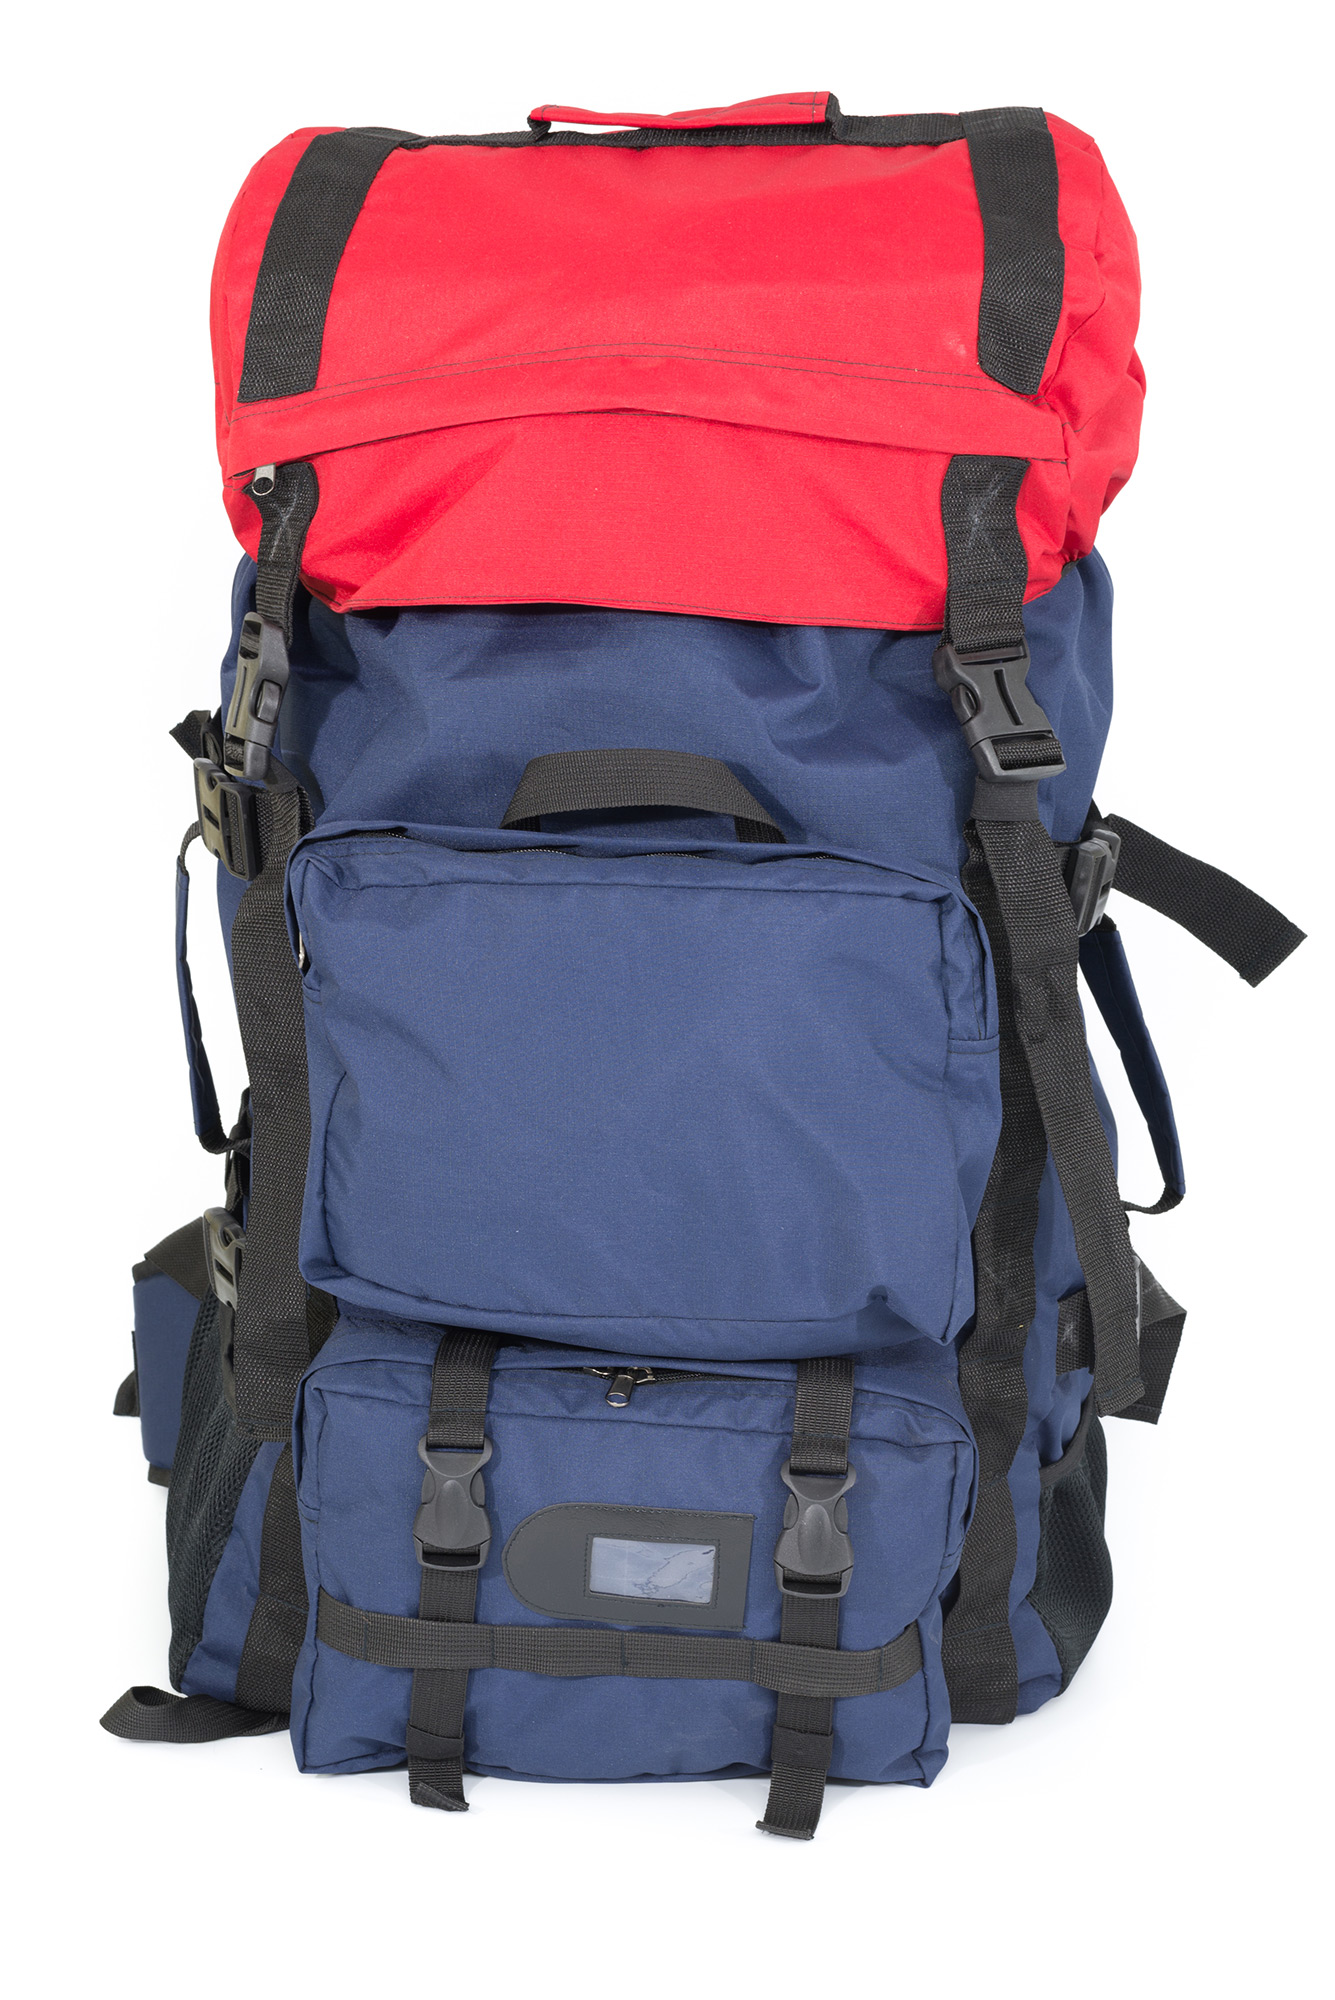 Рюкзак спасателя, Большой туристический рюкзак для дальних переходов. Имеет внешние объёмные карманы. Поясная поддержка, купить, империал, швейное производство, сумки на заказ, военторг спб